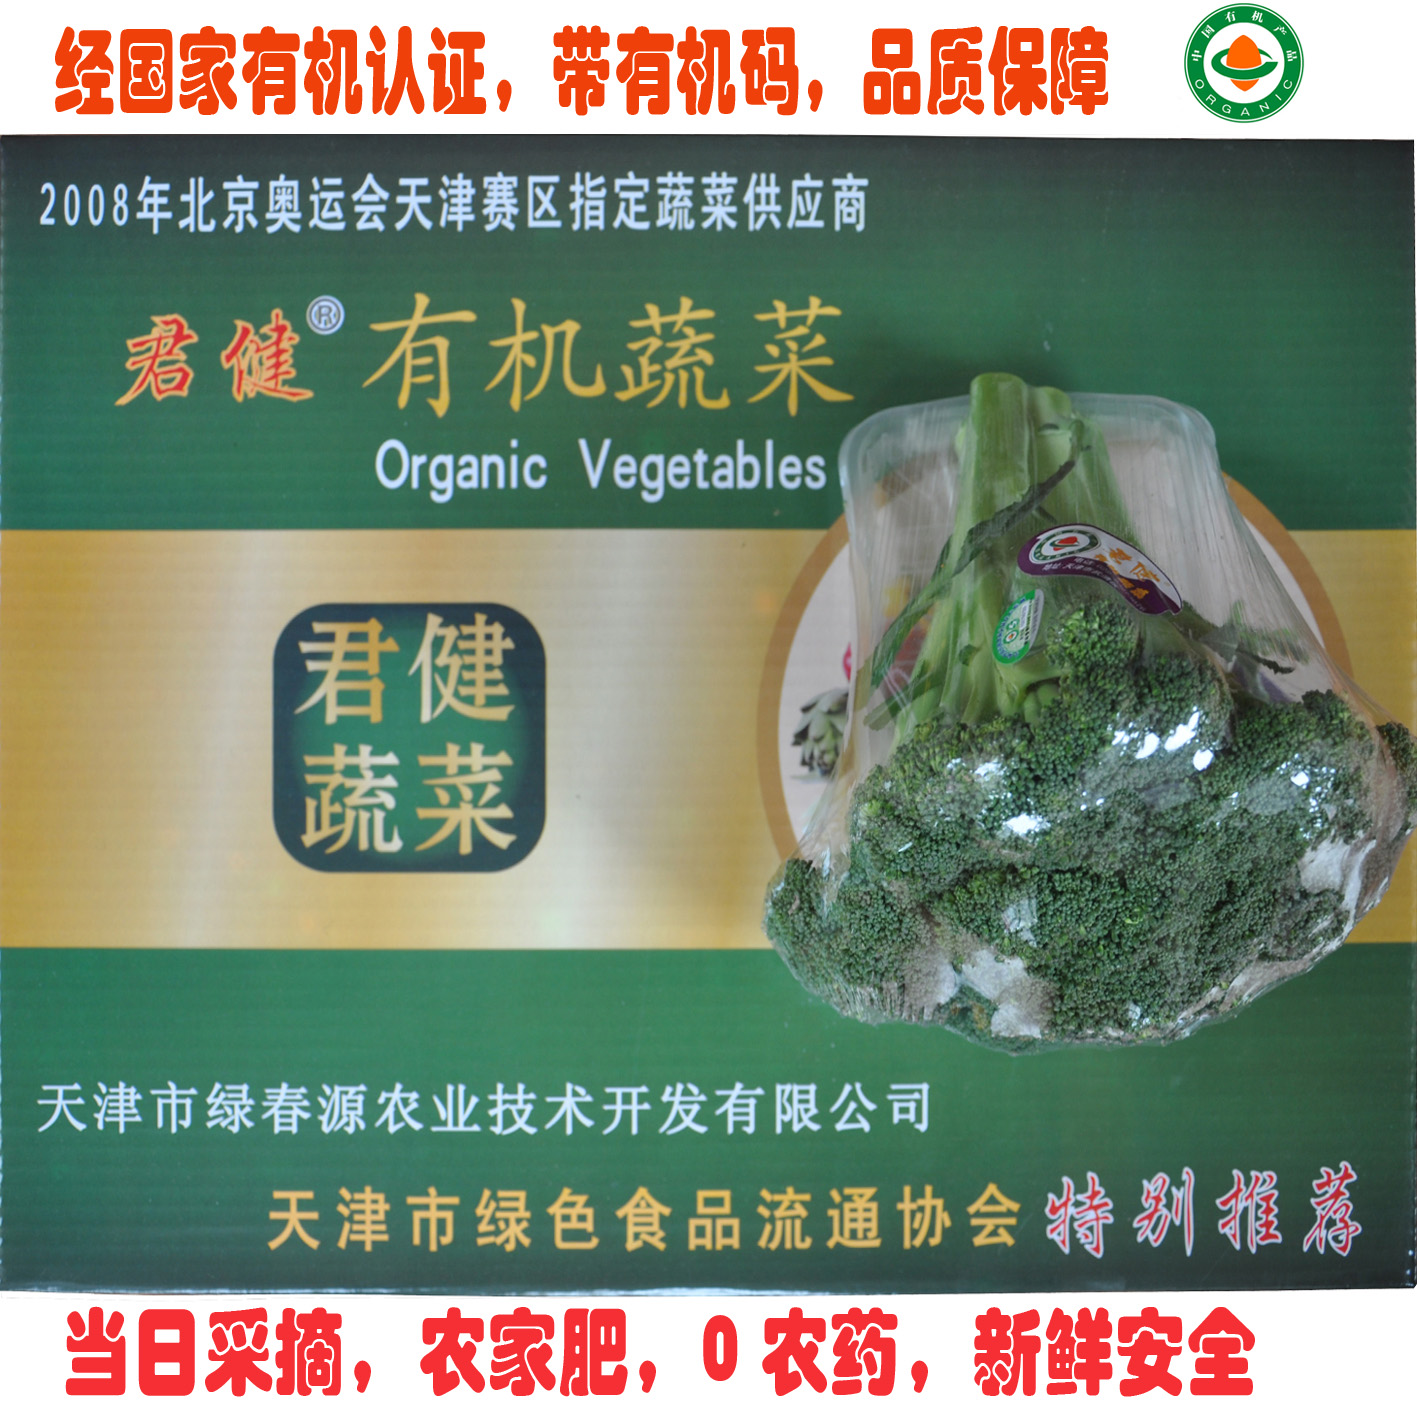 生鲜蔬菜 有机食品 西兰花 有机蔬菜天津 同城配送 有机肥无农药